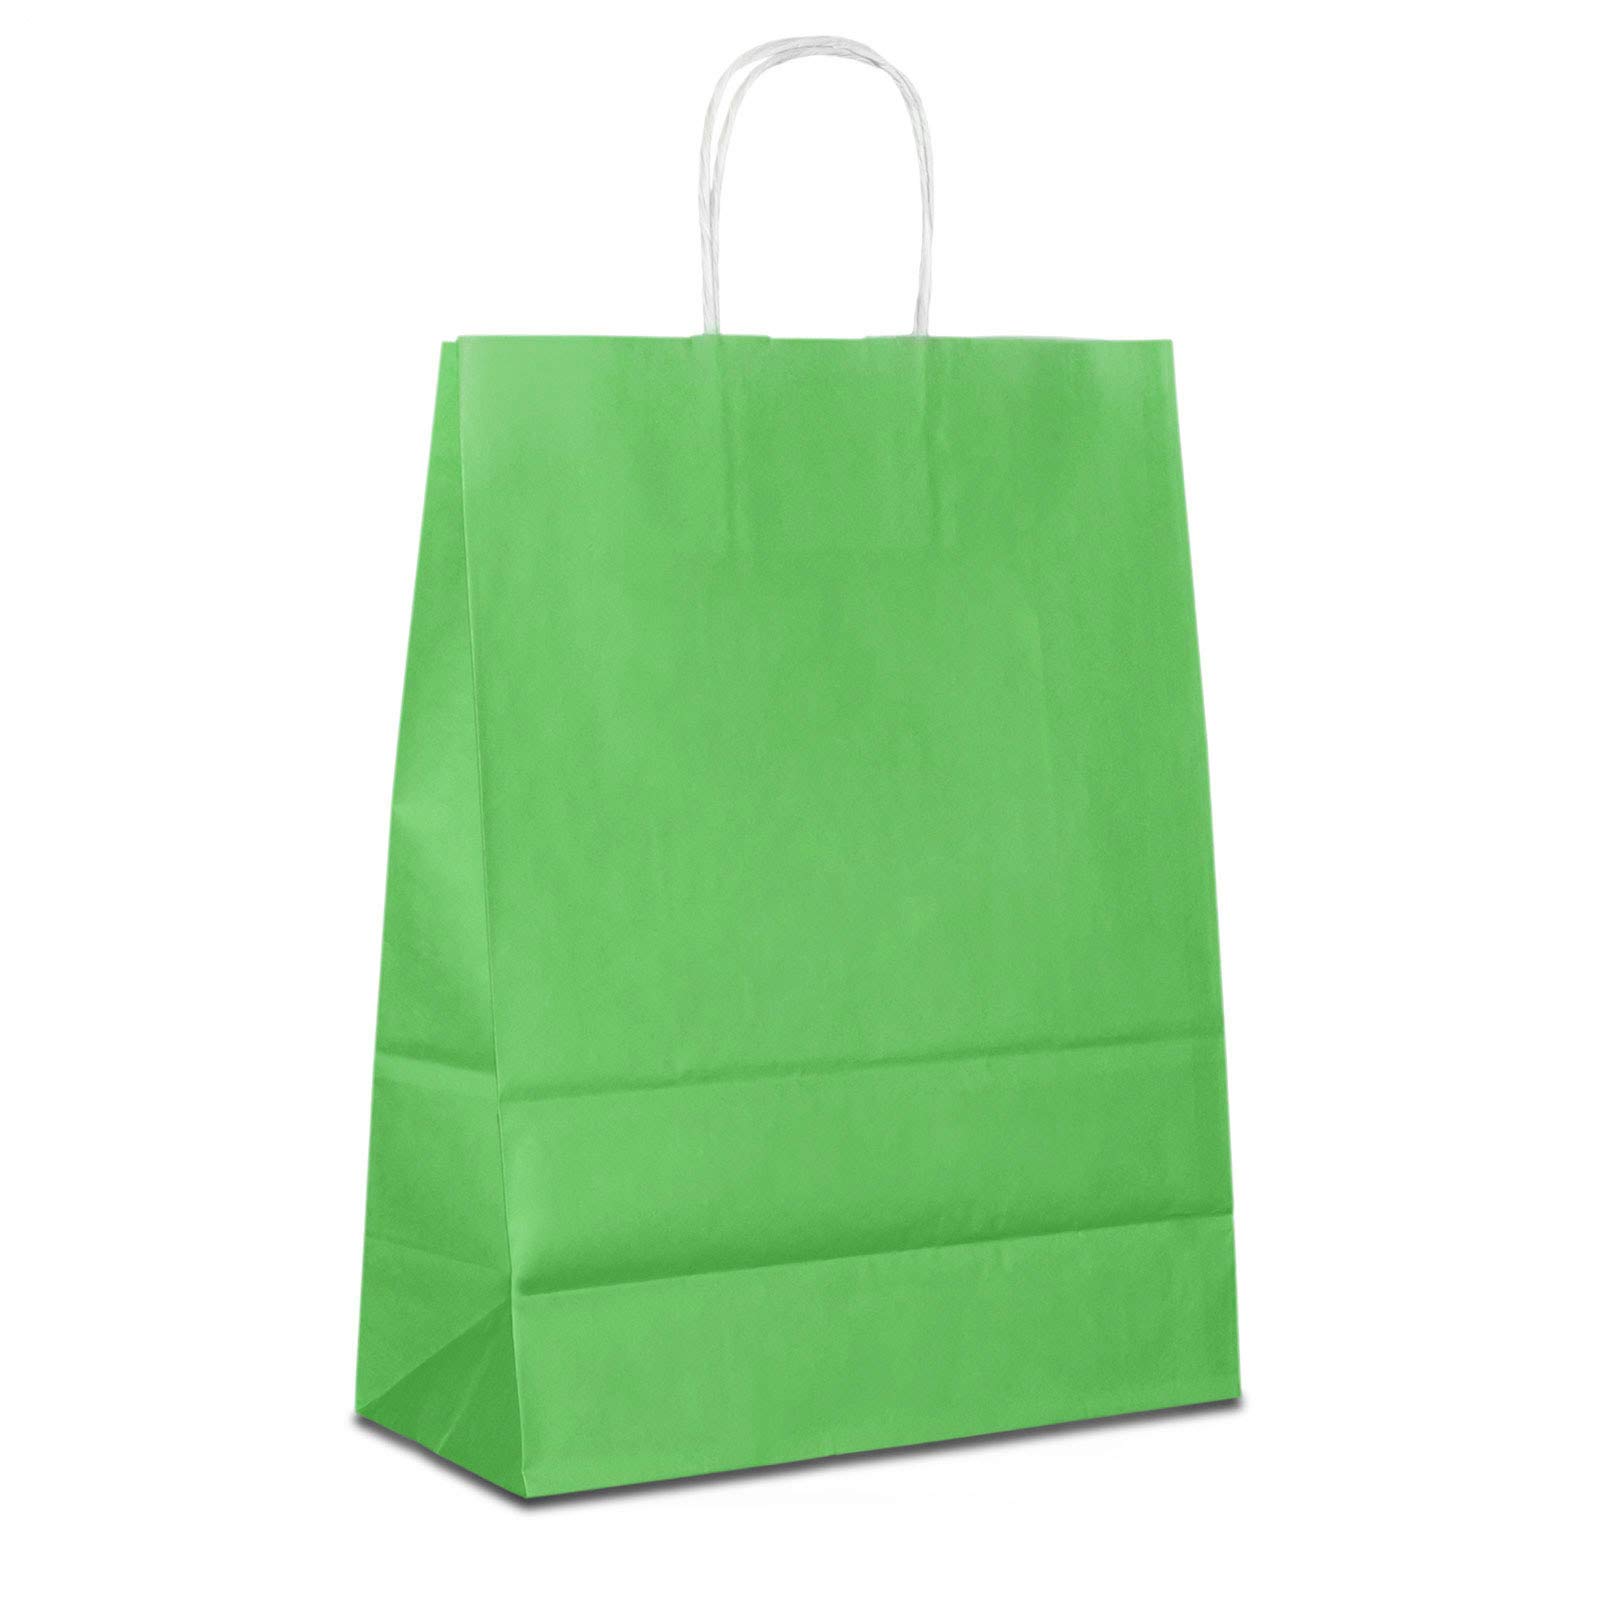 Papiertüten grün mit Kordel-Henkel I 100 Stk. 32+12x41cm I Papiertragetasche für Einzelhandel, Weihnachten, Mitbringsel, TO-GO I Geschenktüten aus Kraftpapier I HUTNER